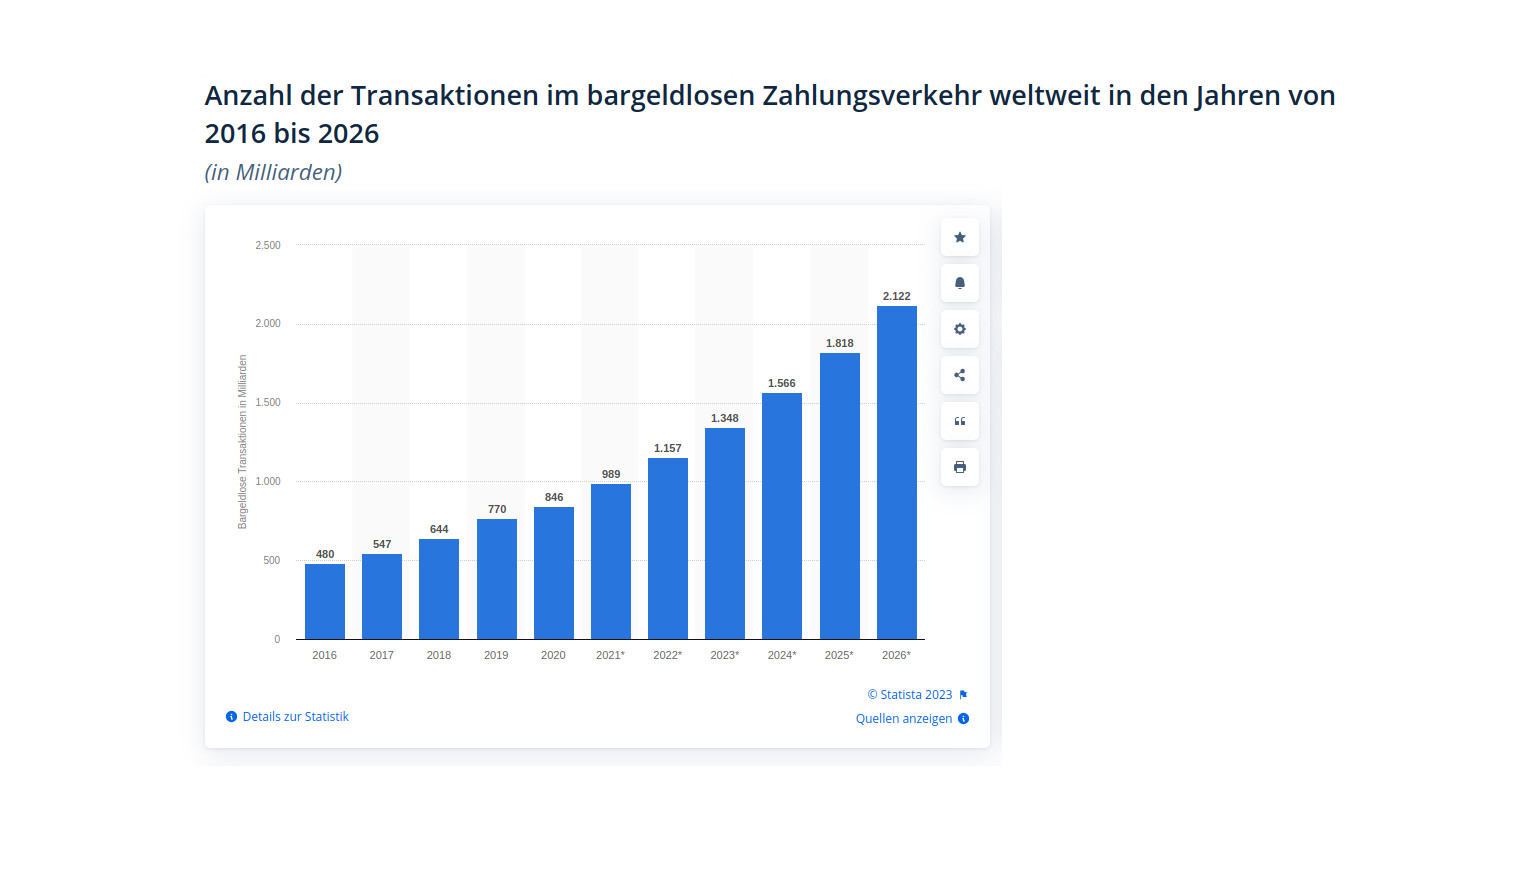 Anzahl der Transaktionen im bargeldlosen Zahlungsverkehr weltweit in den Jahren von 2016 bis 2026.